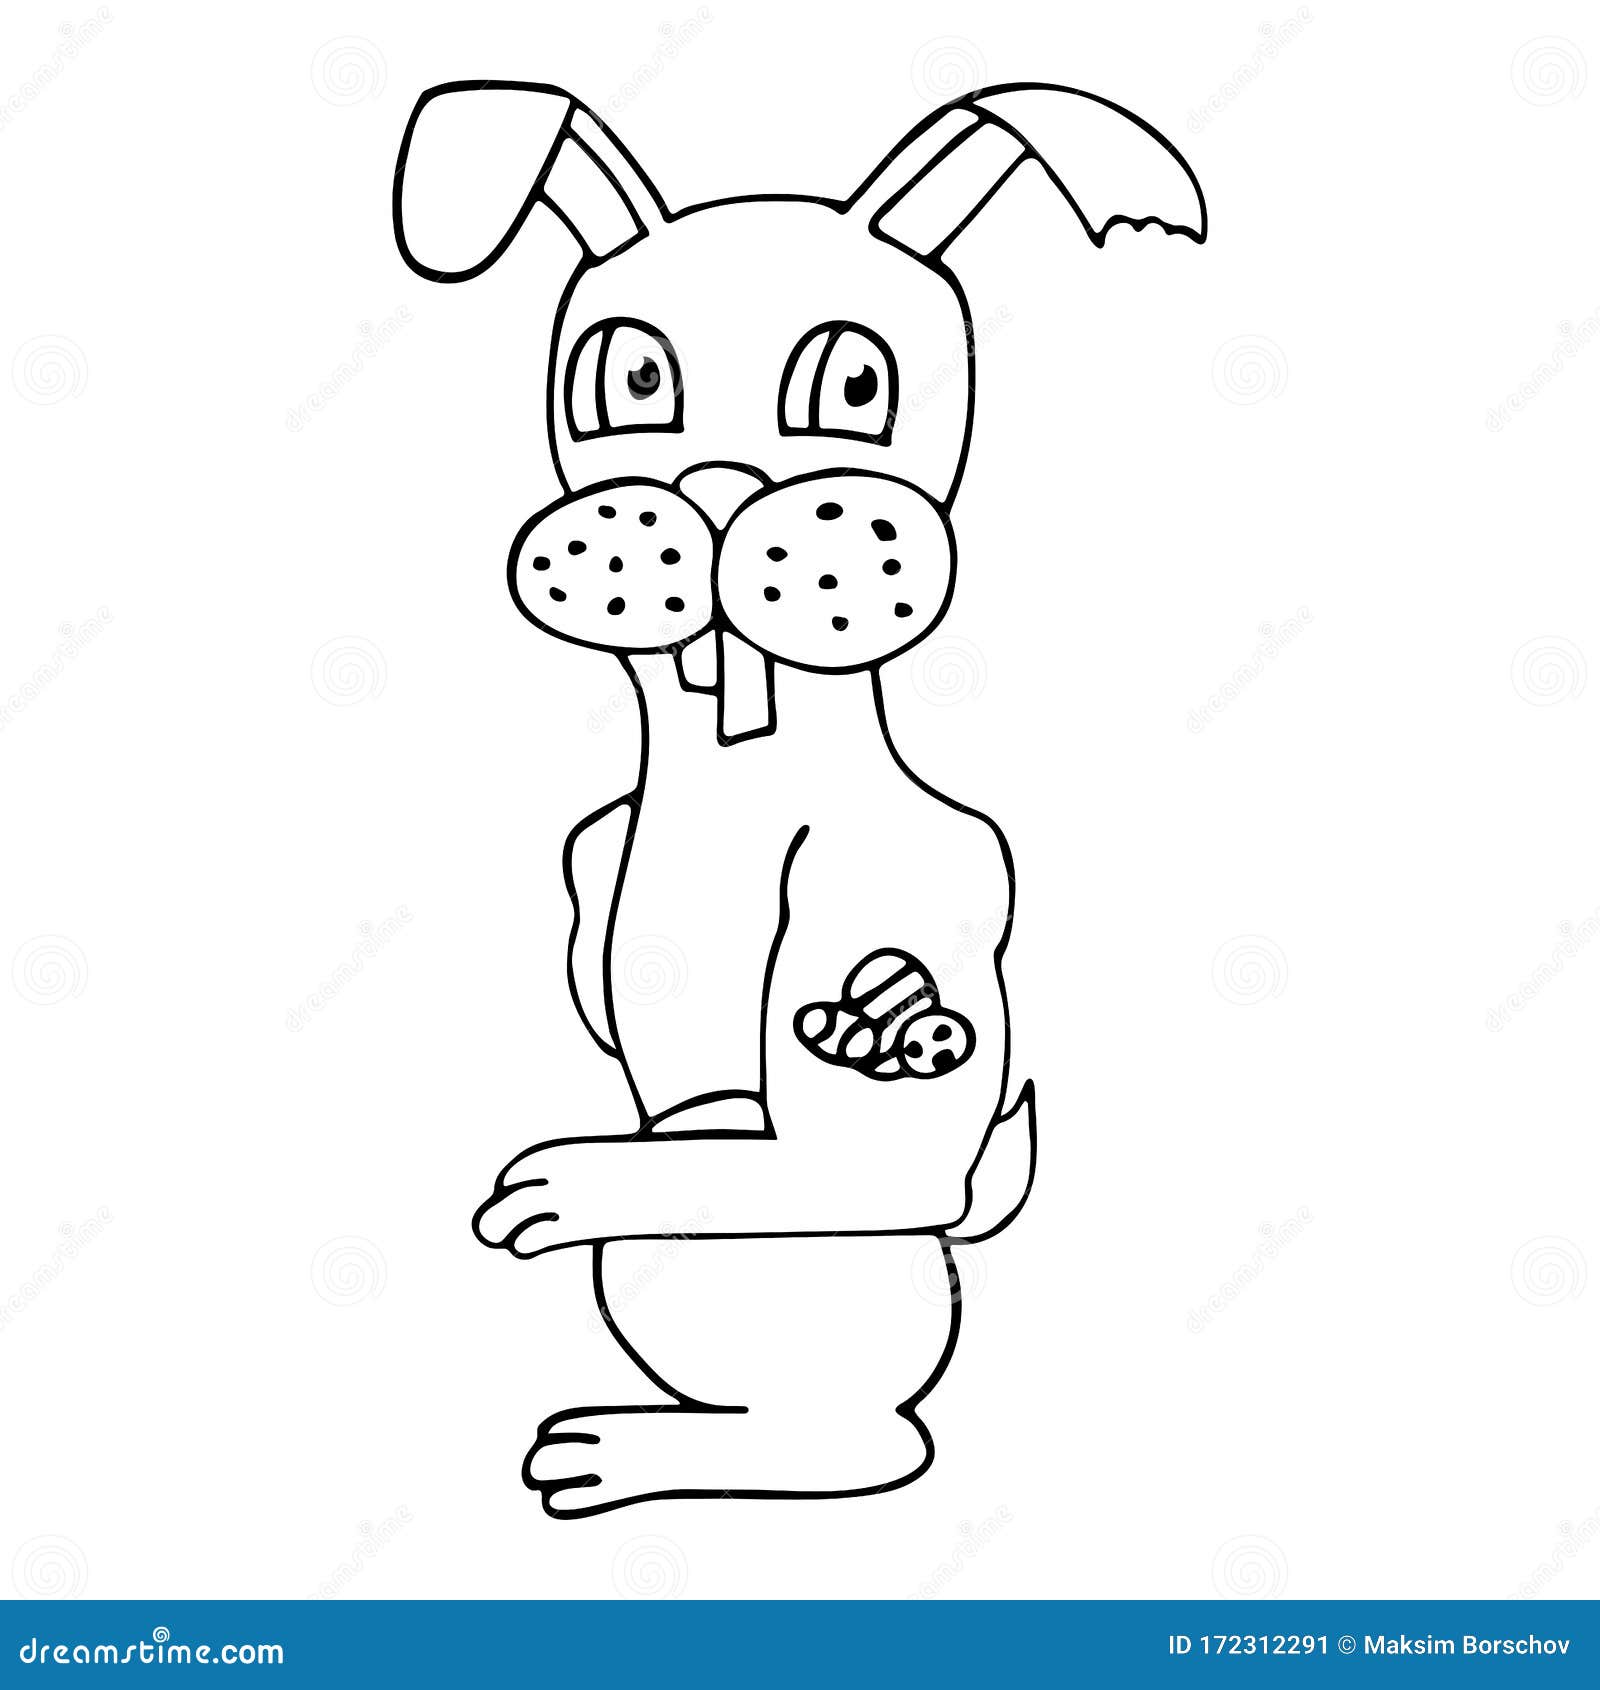 6,575 张Bunny tattoo 免版税图片、库存照片和图像| Shutterstock